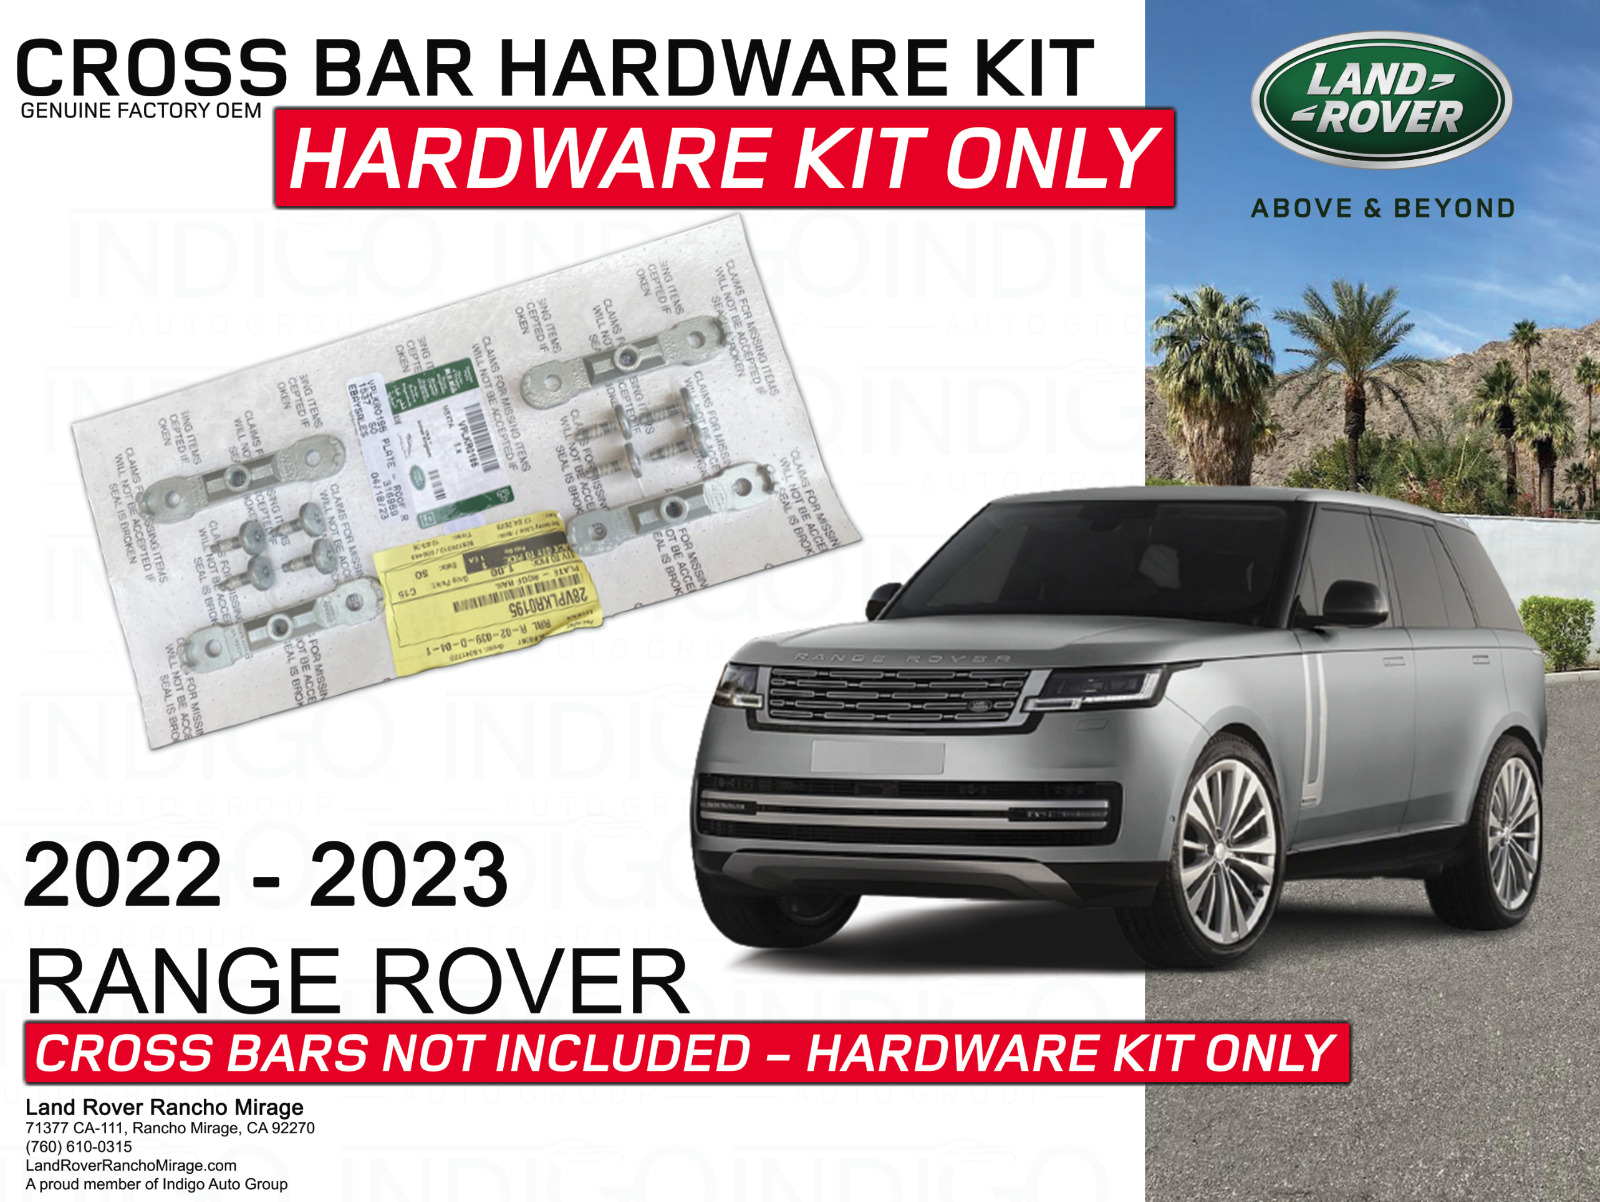 2022-2023 RANGE ROVER Cross Bar Hardware Kit ONLY Genuine Factory OEM VPLKR0195